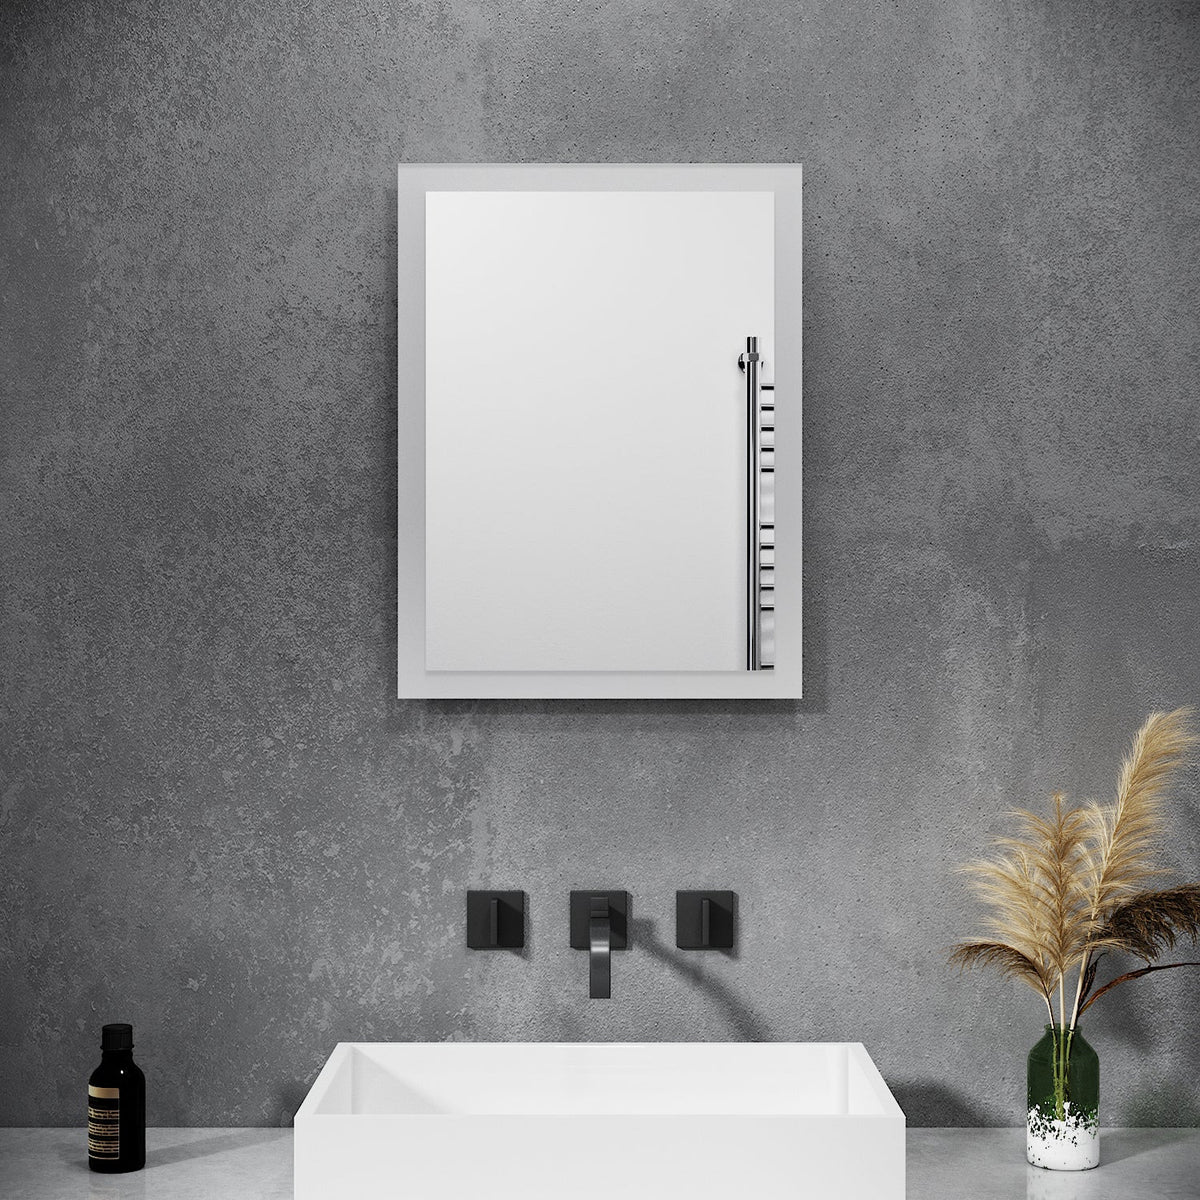 Badspiegel mit LED Beleuchtung Wandspiegel Badezimmerspiegel Lichtspiegel 60x50